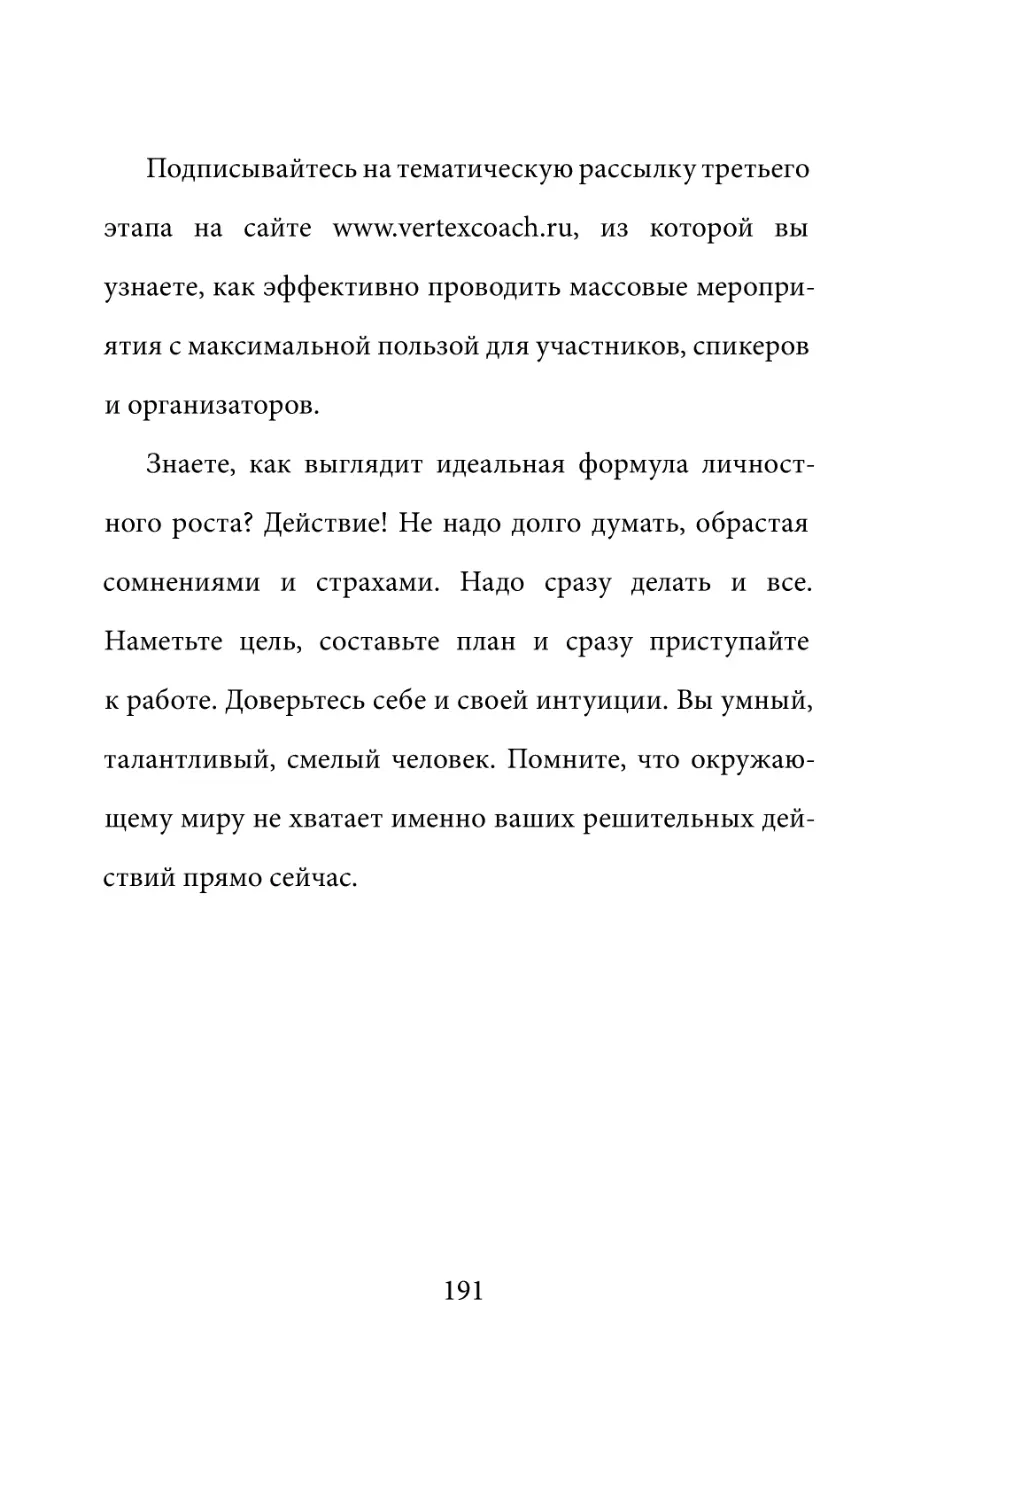 Sergey_Filippov_Dnevnik_samorazvitia_Evolyutsia_Vnutrennego_Sostoyania_191.pdf (p.191)